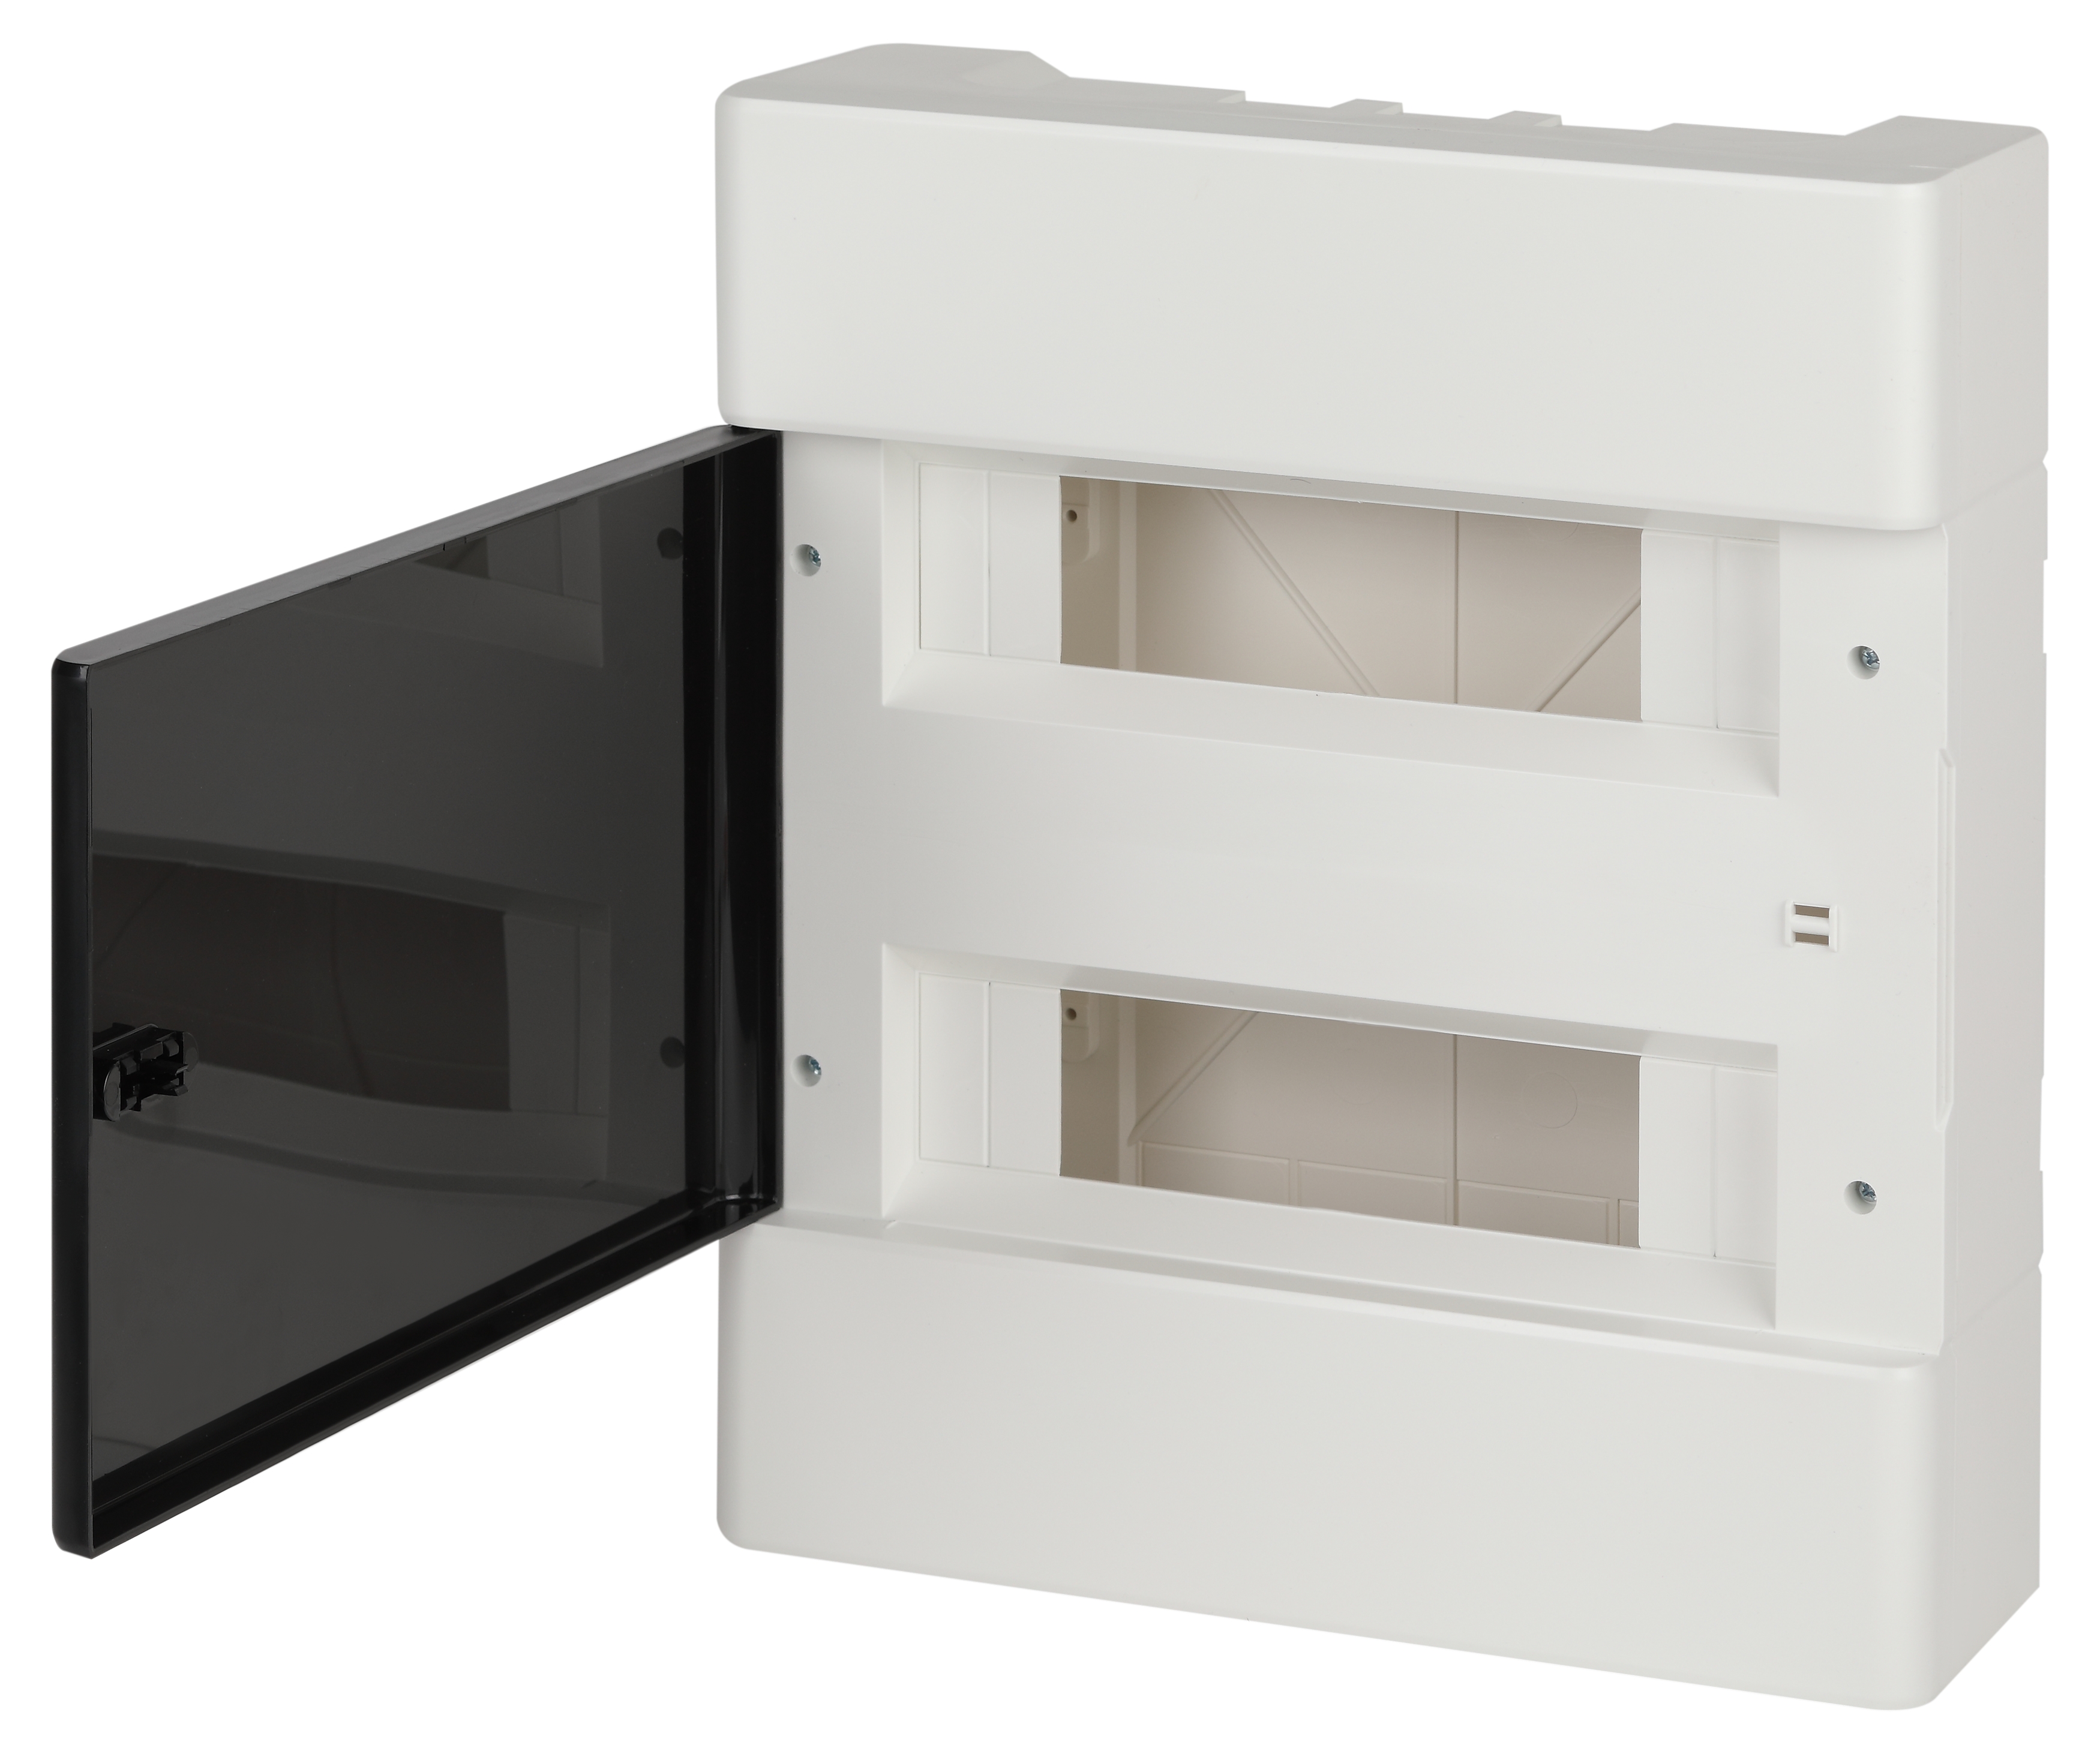 Щит распределительный Trend BOXS-24-p-s-t, навесной, пластик, 2 ряда/24 модуля, прозрачная дверь, белый, IP 41, ЩРН-П-24 Эра (Б0052641)